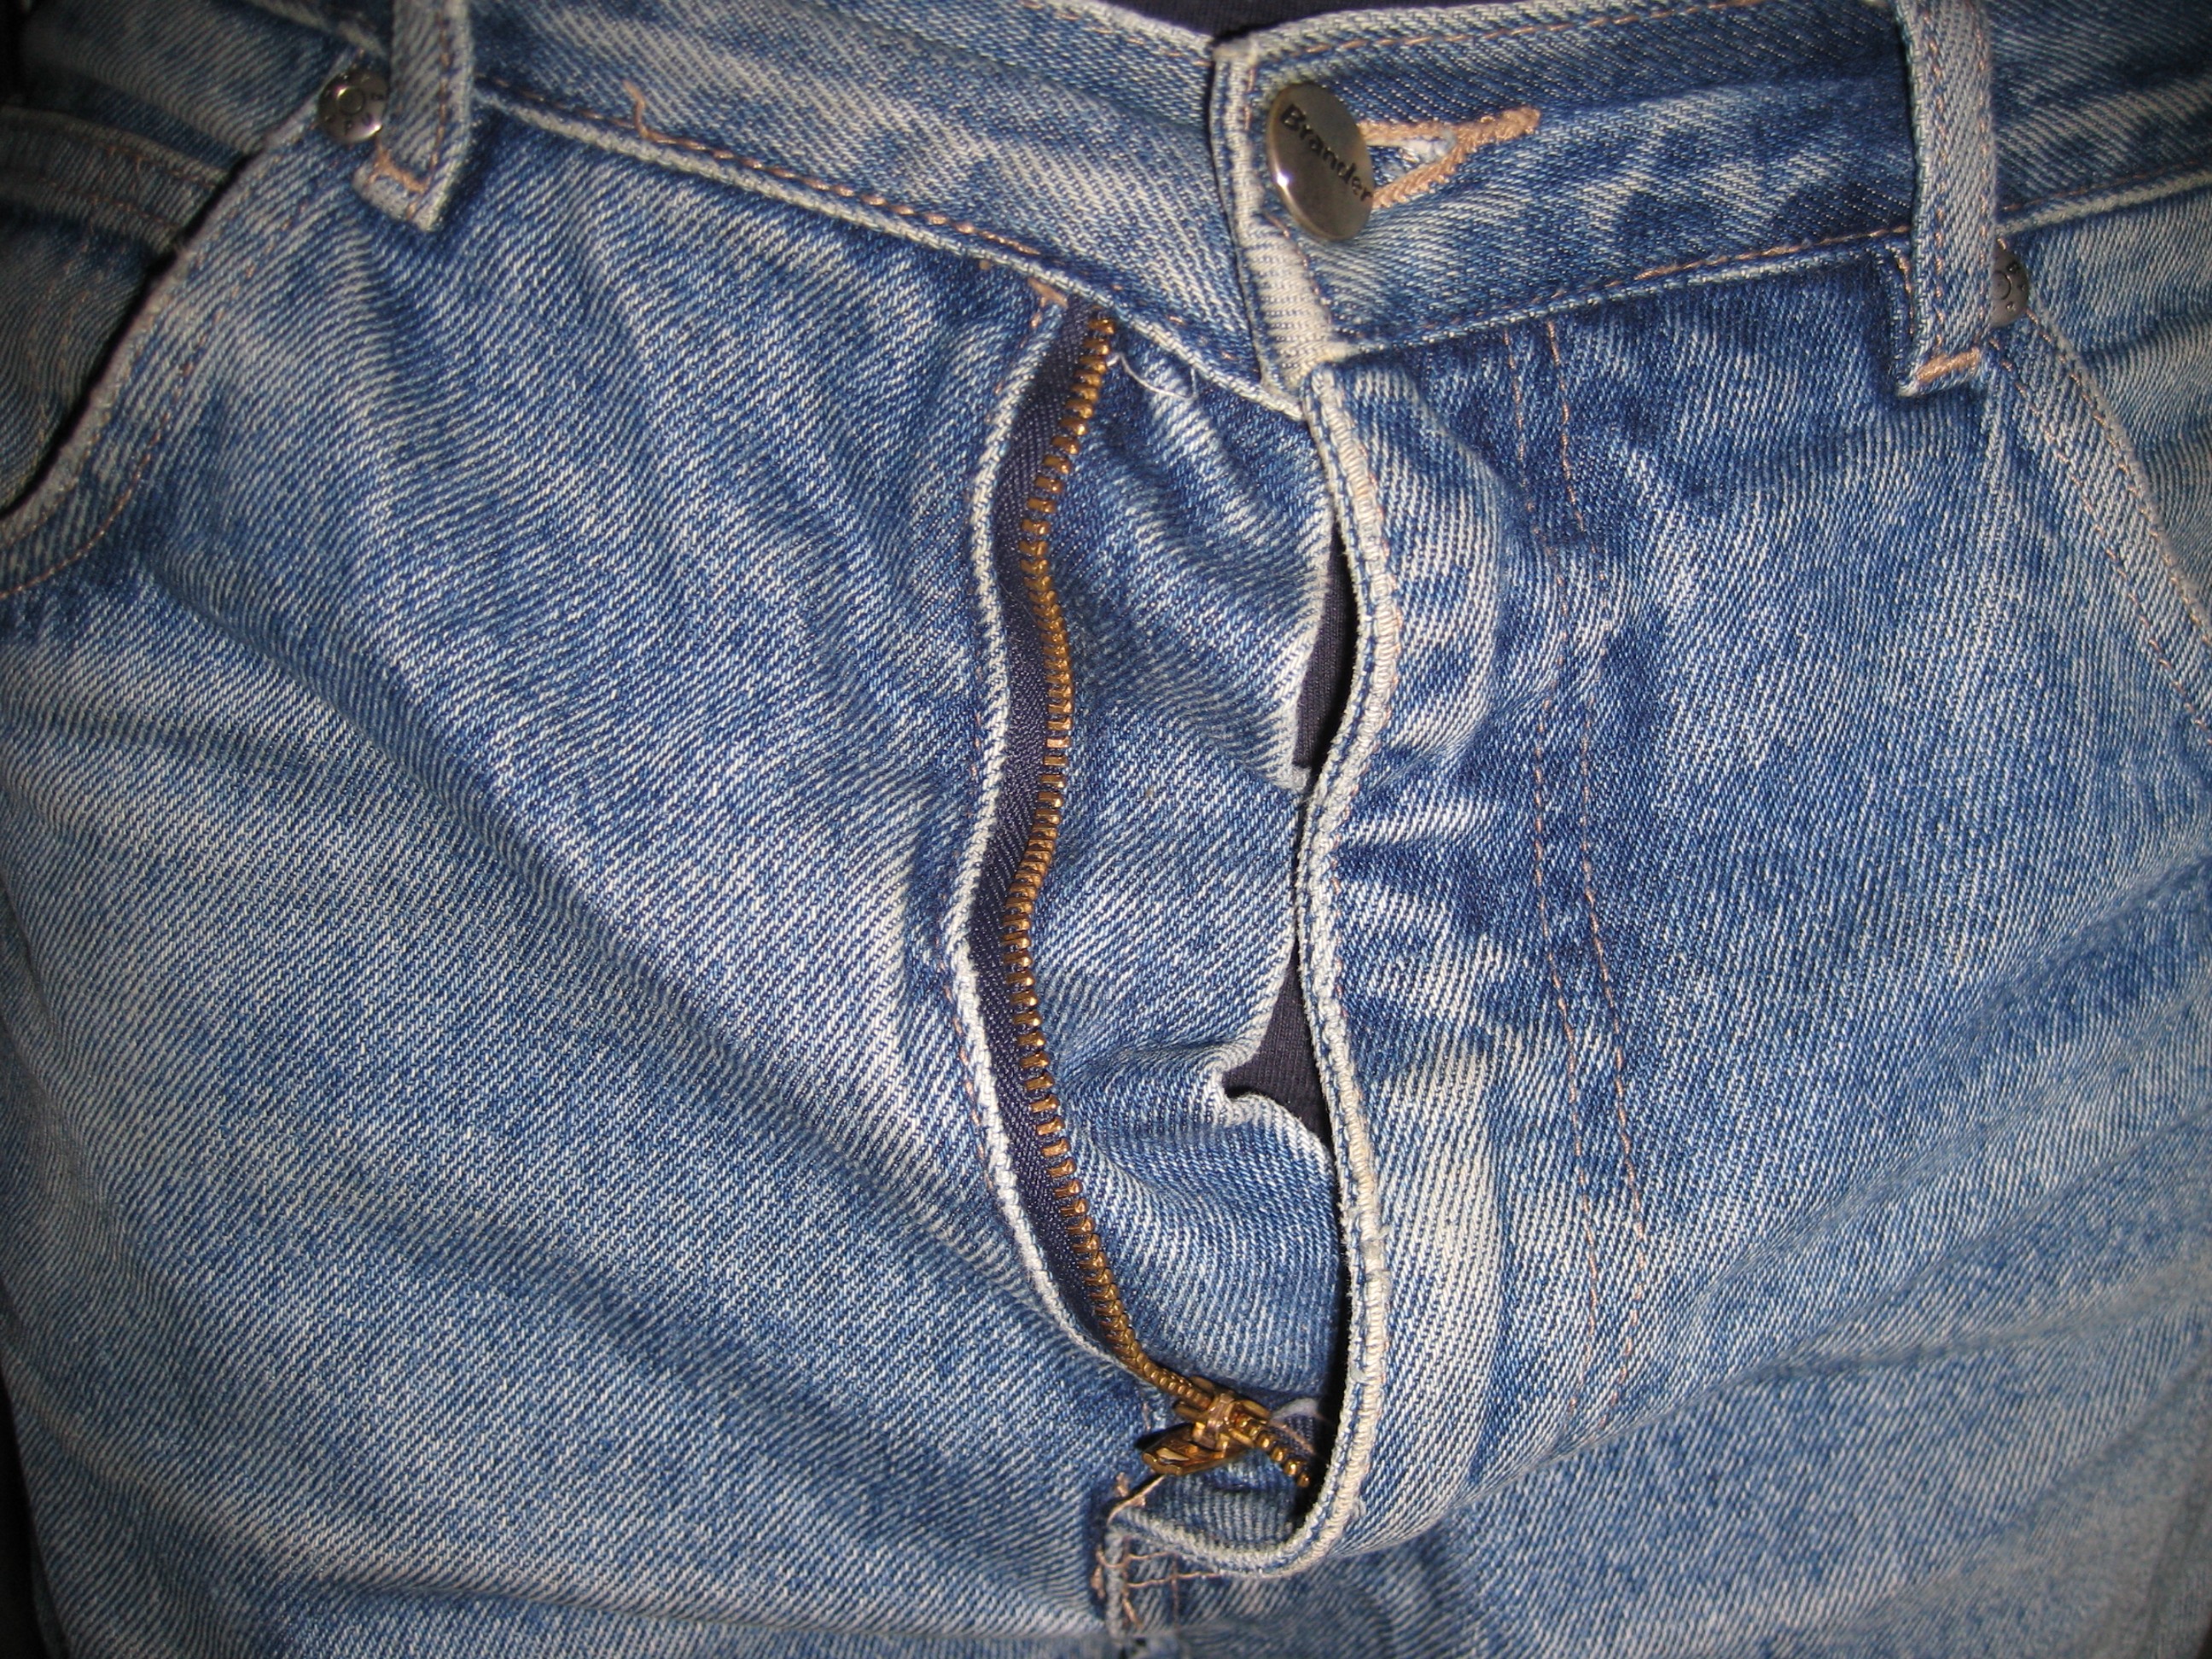 Как починить молнию на джинсах?